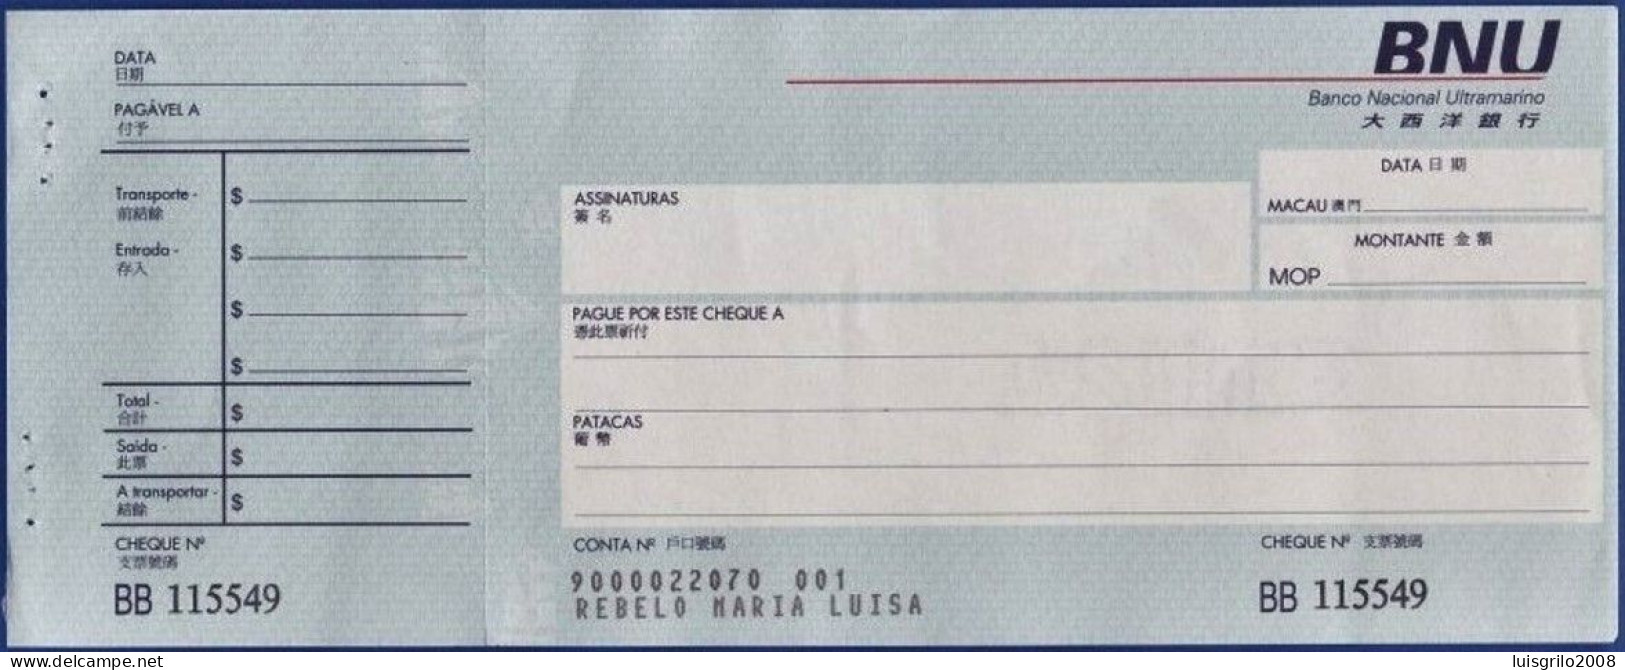 Macau, Portugal, Cheque - Banco Nacional Ultramarino -|- Nº BB115547 - Cheques En Traveller's Cheques